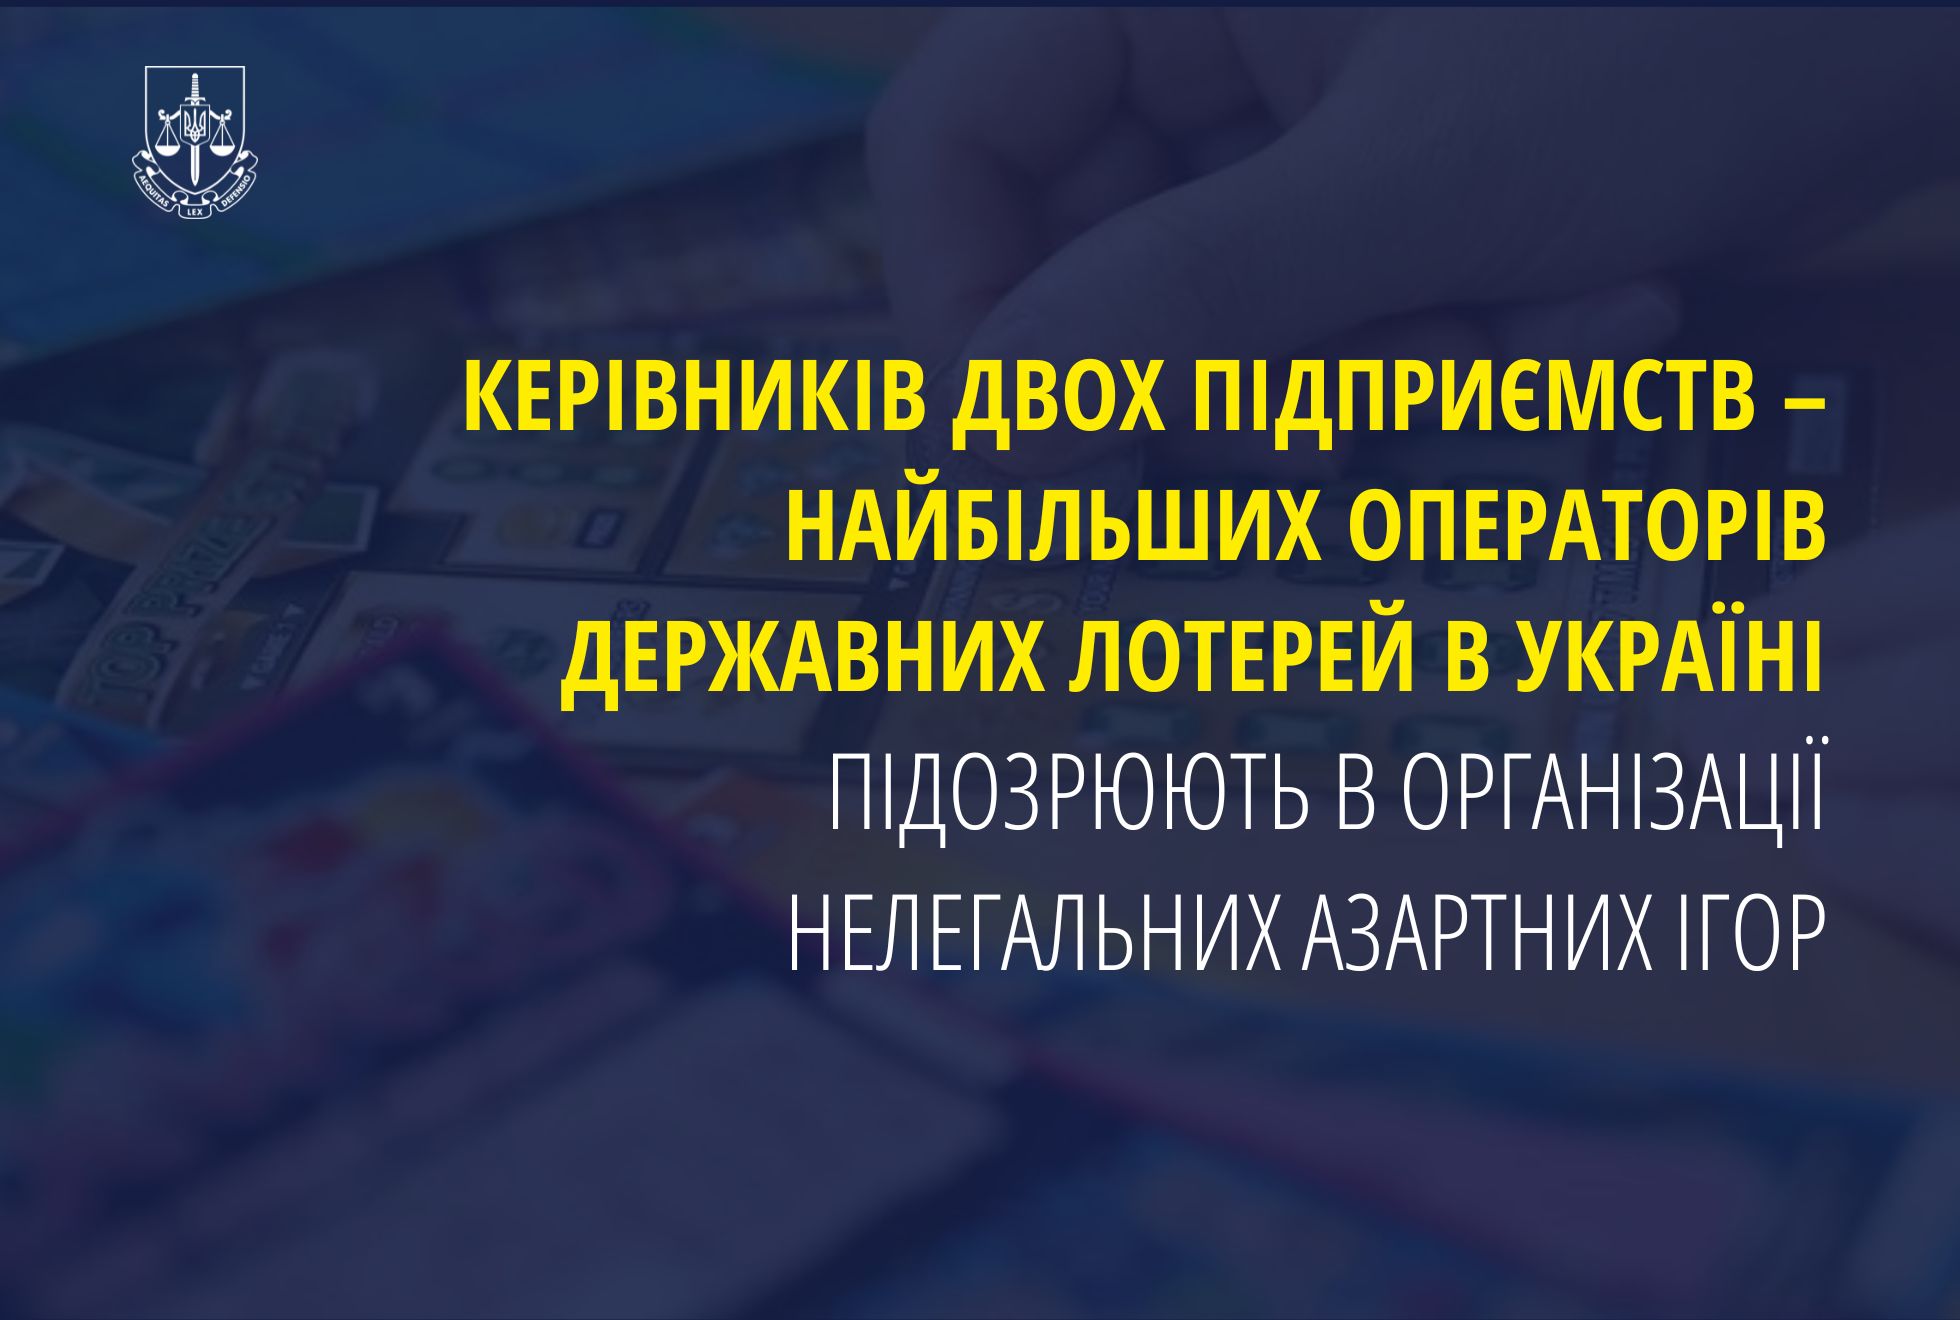 Керівників двох підприємств – найбільших операторів державних лотерей в Україні підозрюють в організації нелегальних азартних ігор